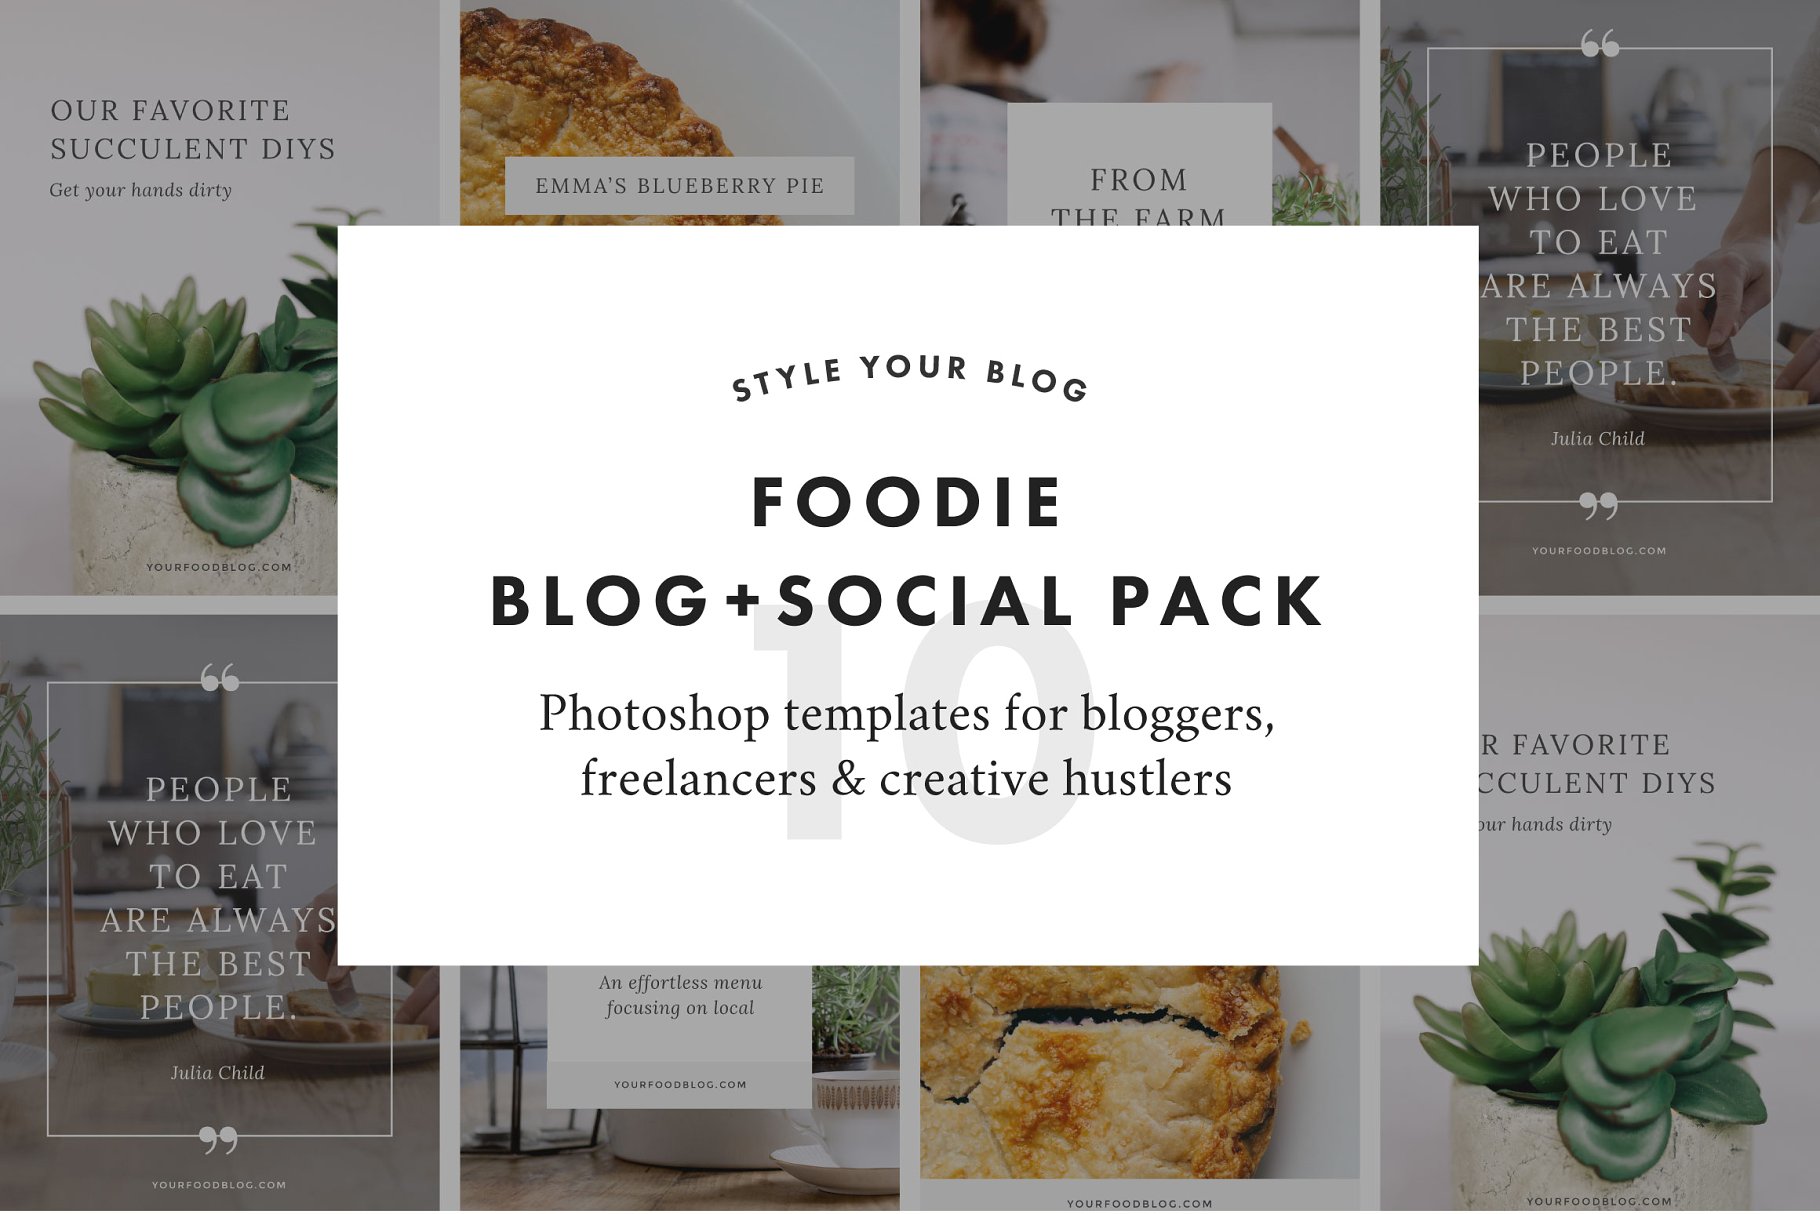 博客+社交贴图素材包 Foodie Blog + Social Pack插图